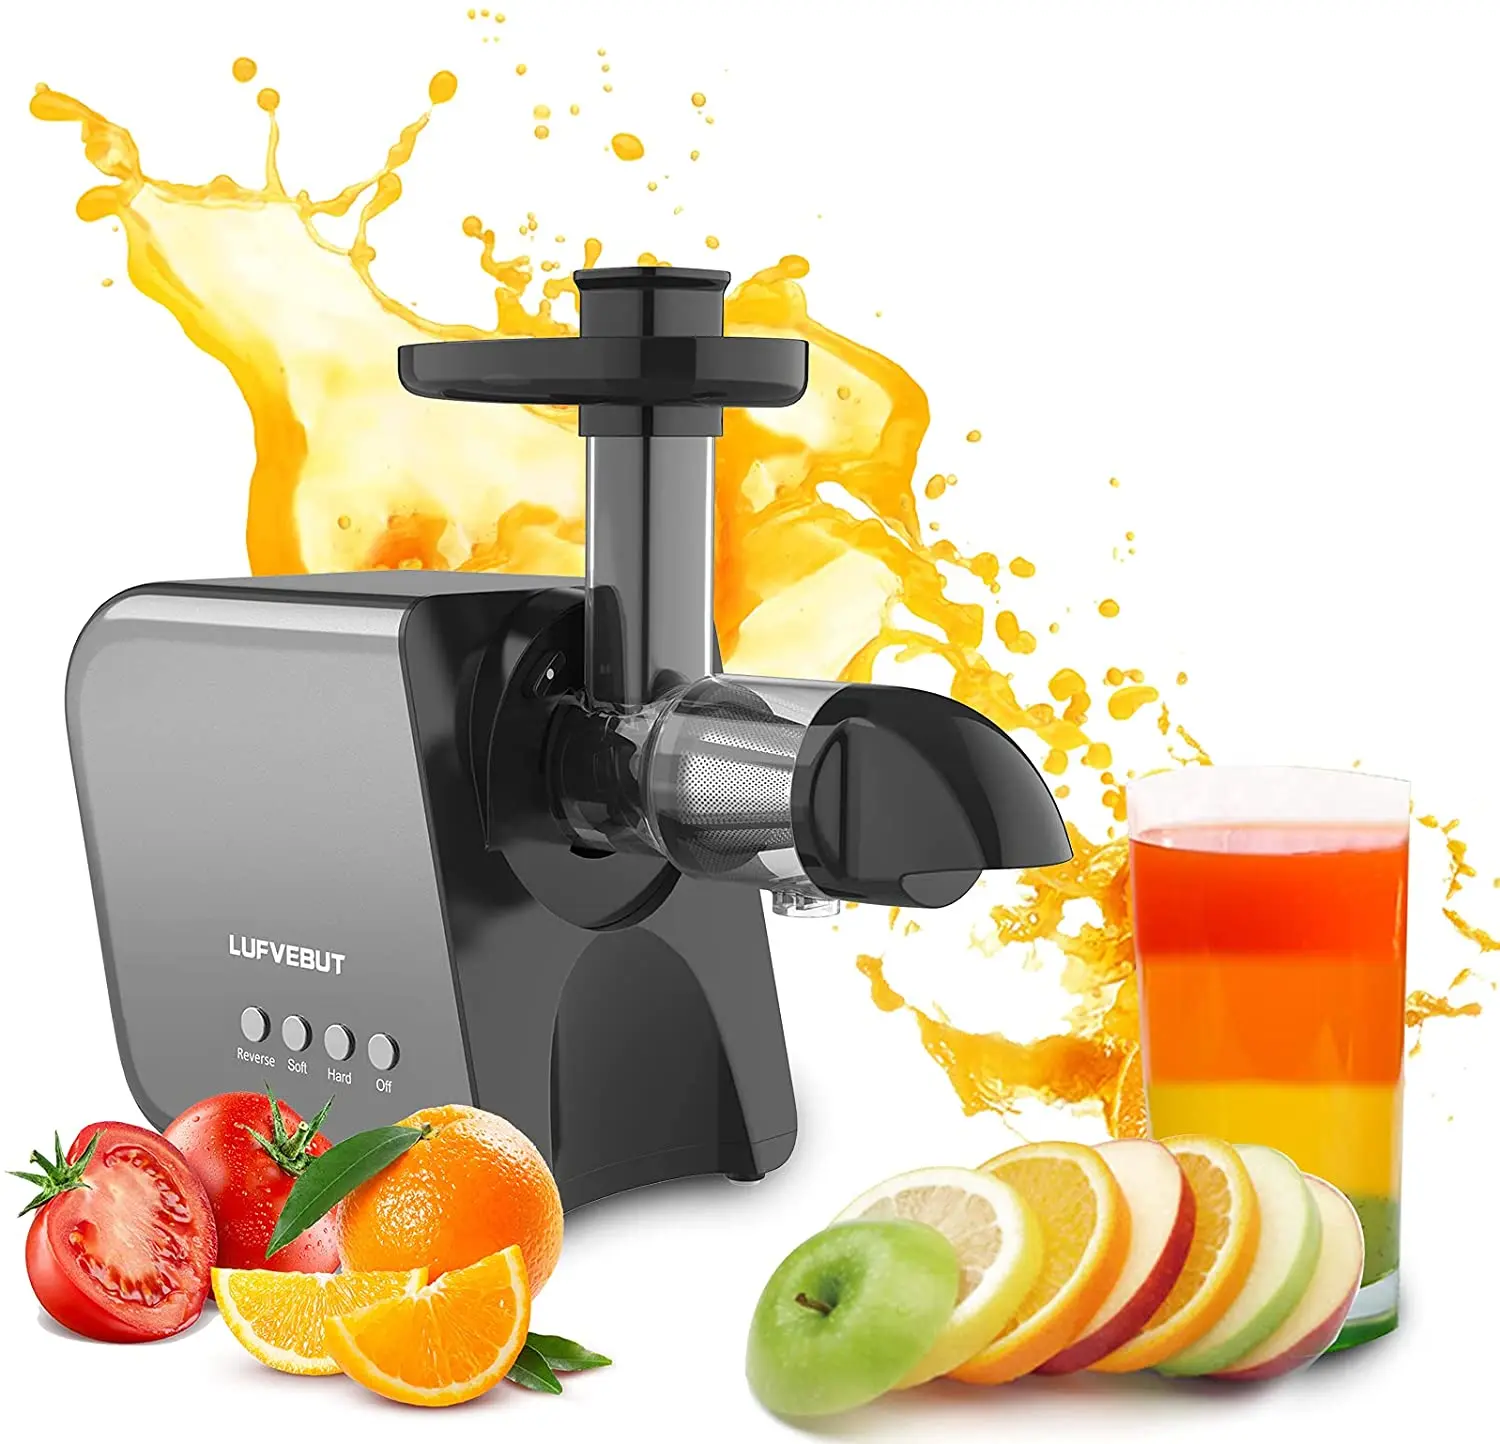 Manuale Mini Juicer Arancione spremiagrumi Macchina della pressa della Mano Cucina Gadget Succo di Frutta Juicer Maker Portable